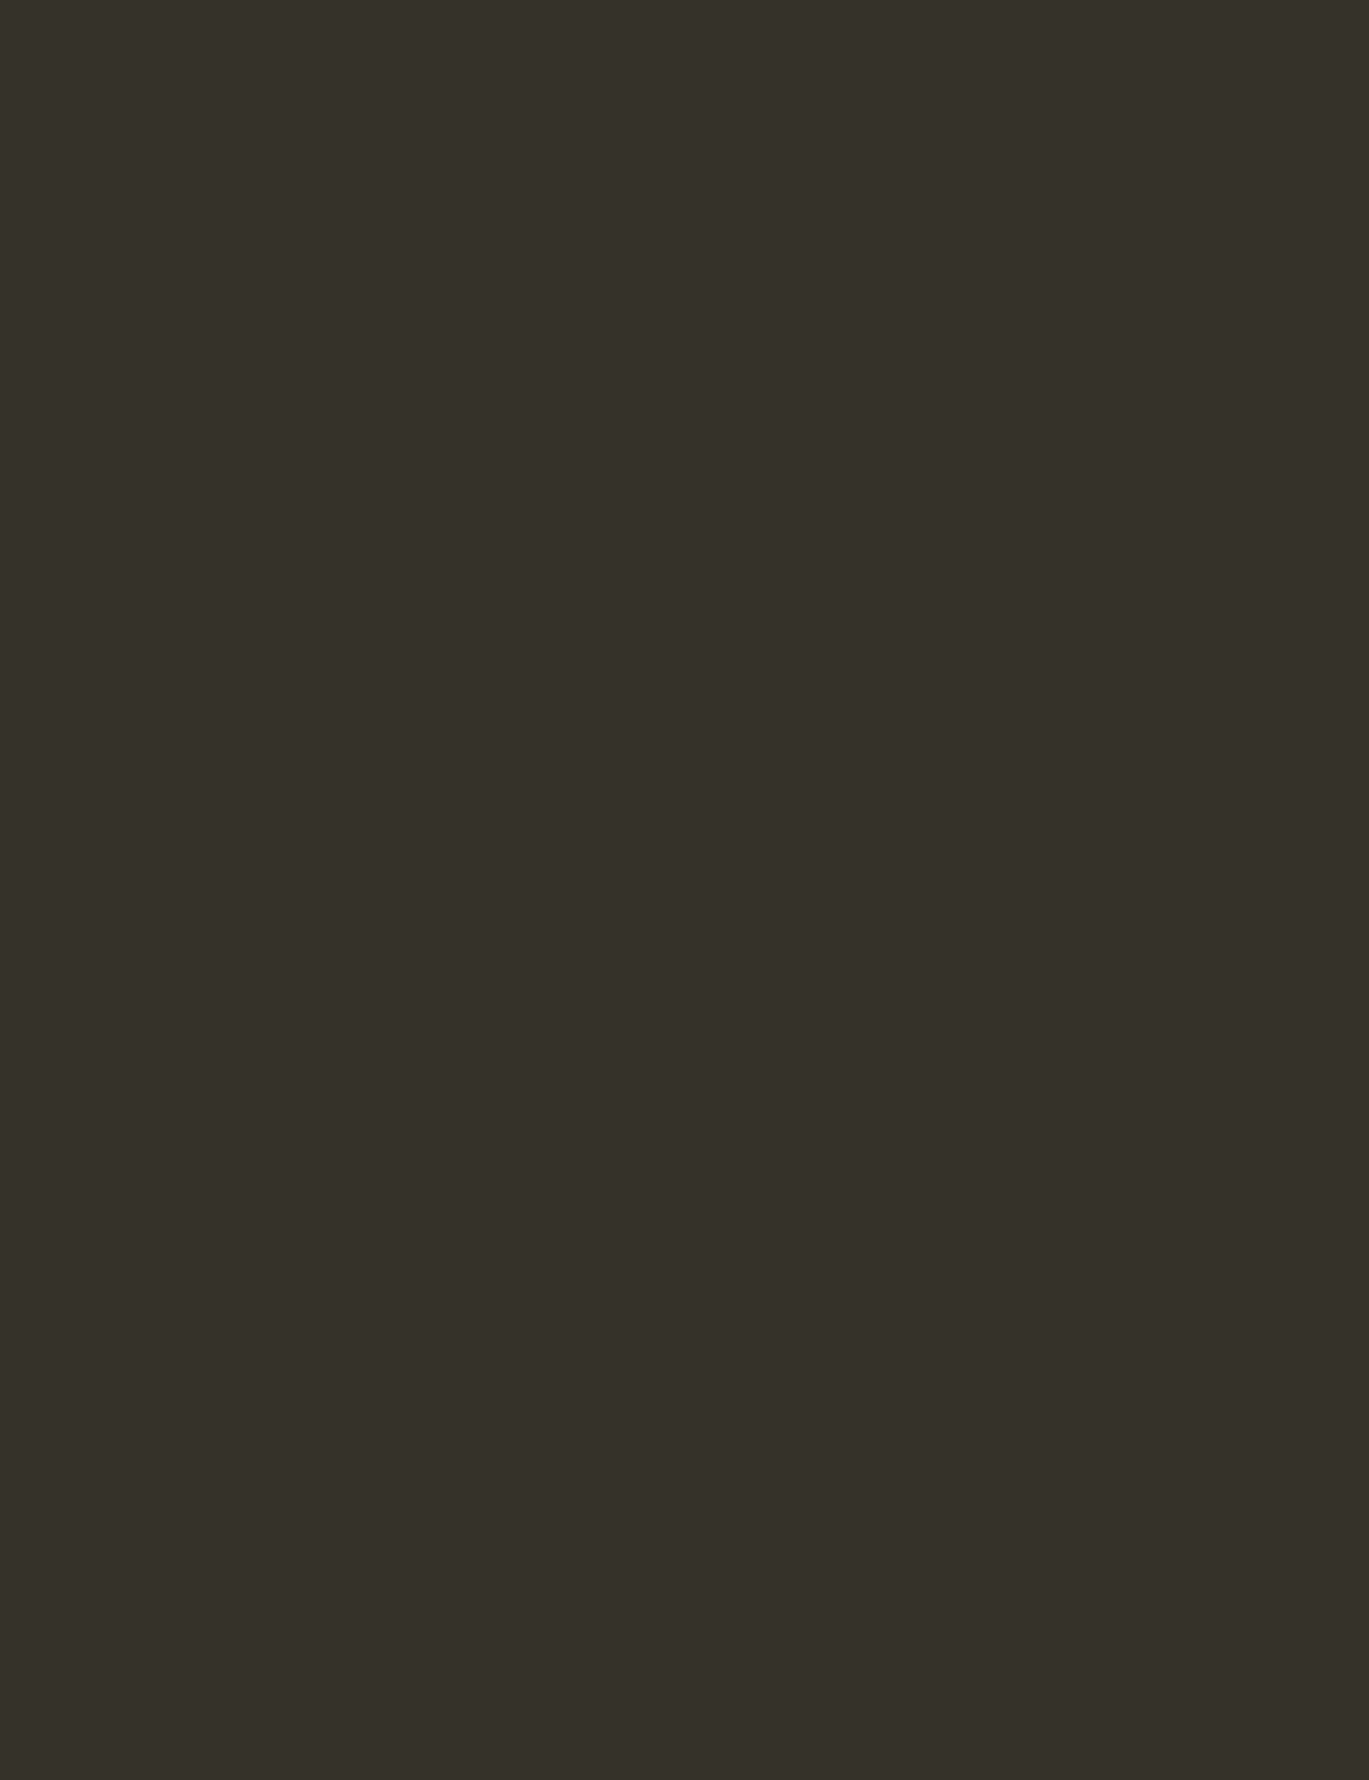 Илья Репин. Портрет художника Павла Чистякова. 1878. Государственная Третьяковская галерея